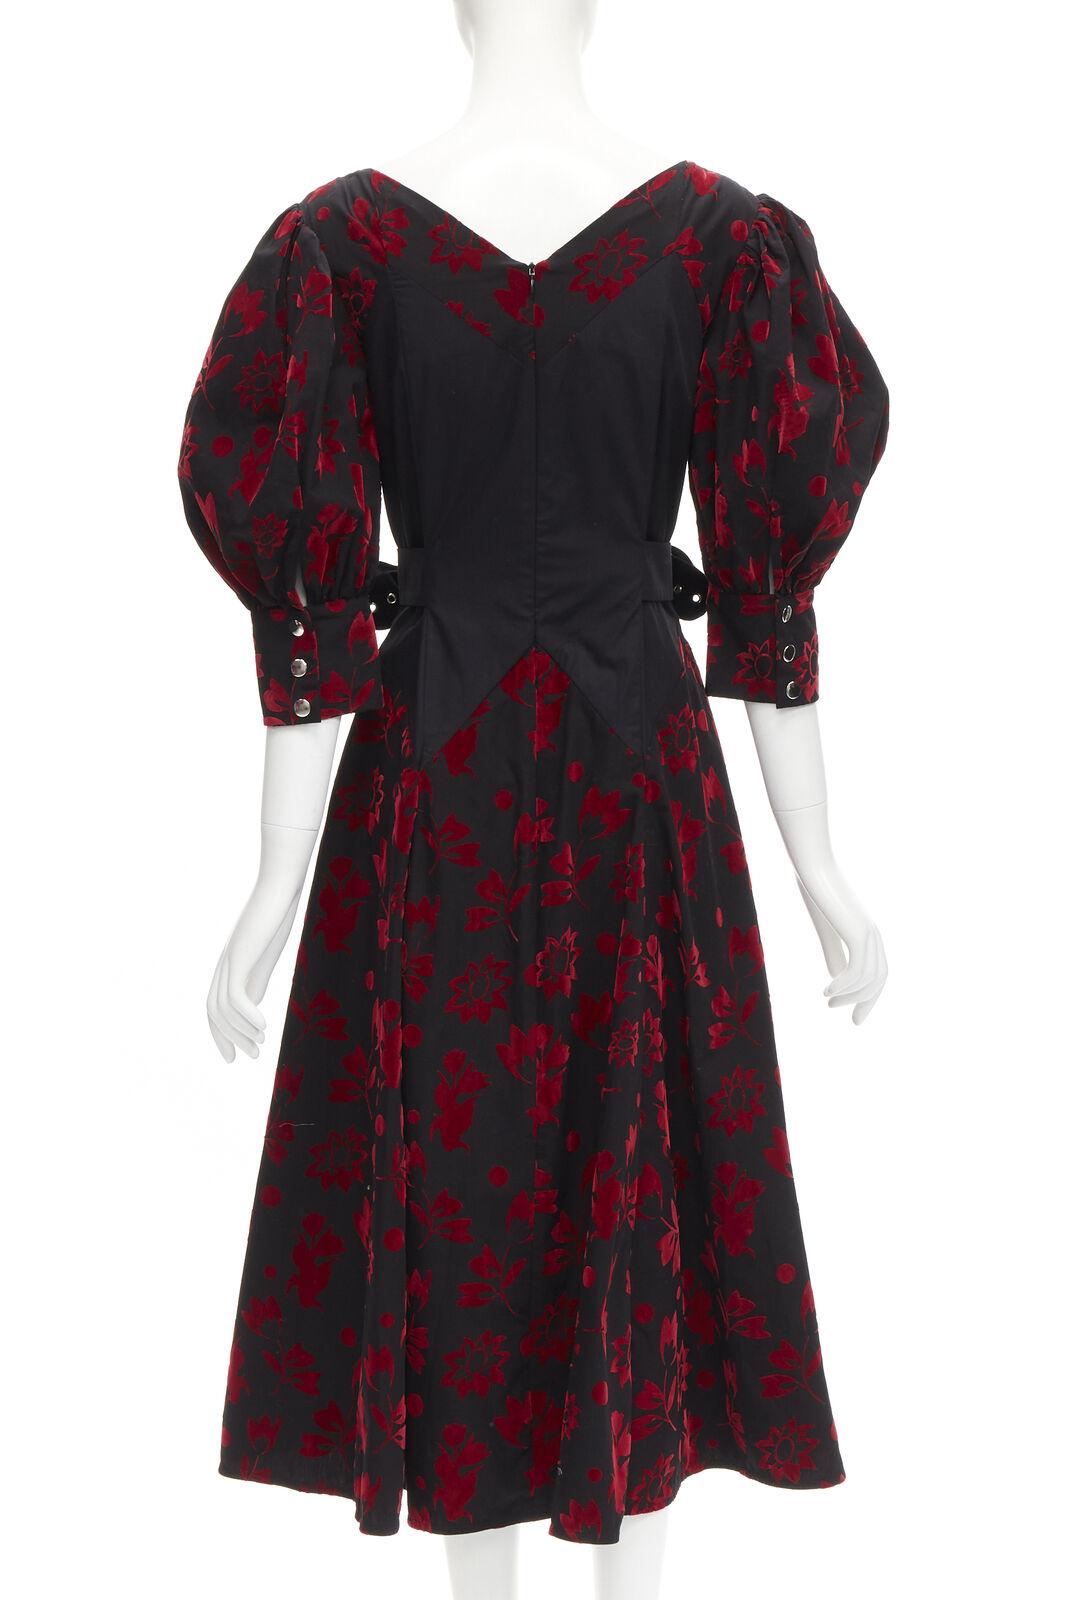 CHOPOVA LOWENA - Robe corset victorienne noire en velours rouge à crochet papillons floraux S Pour femmes en vente